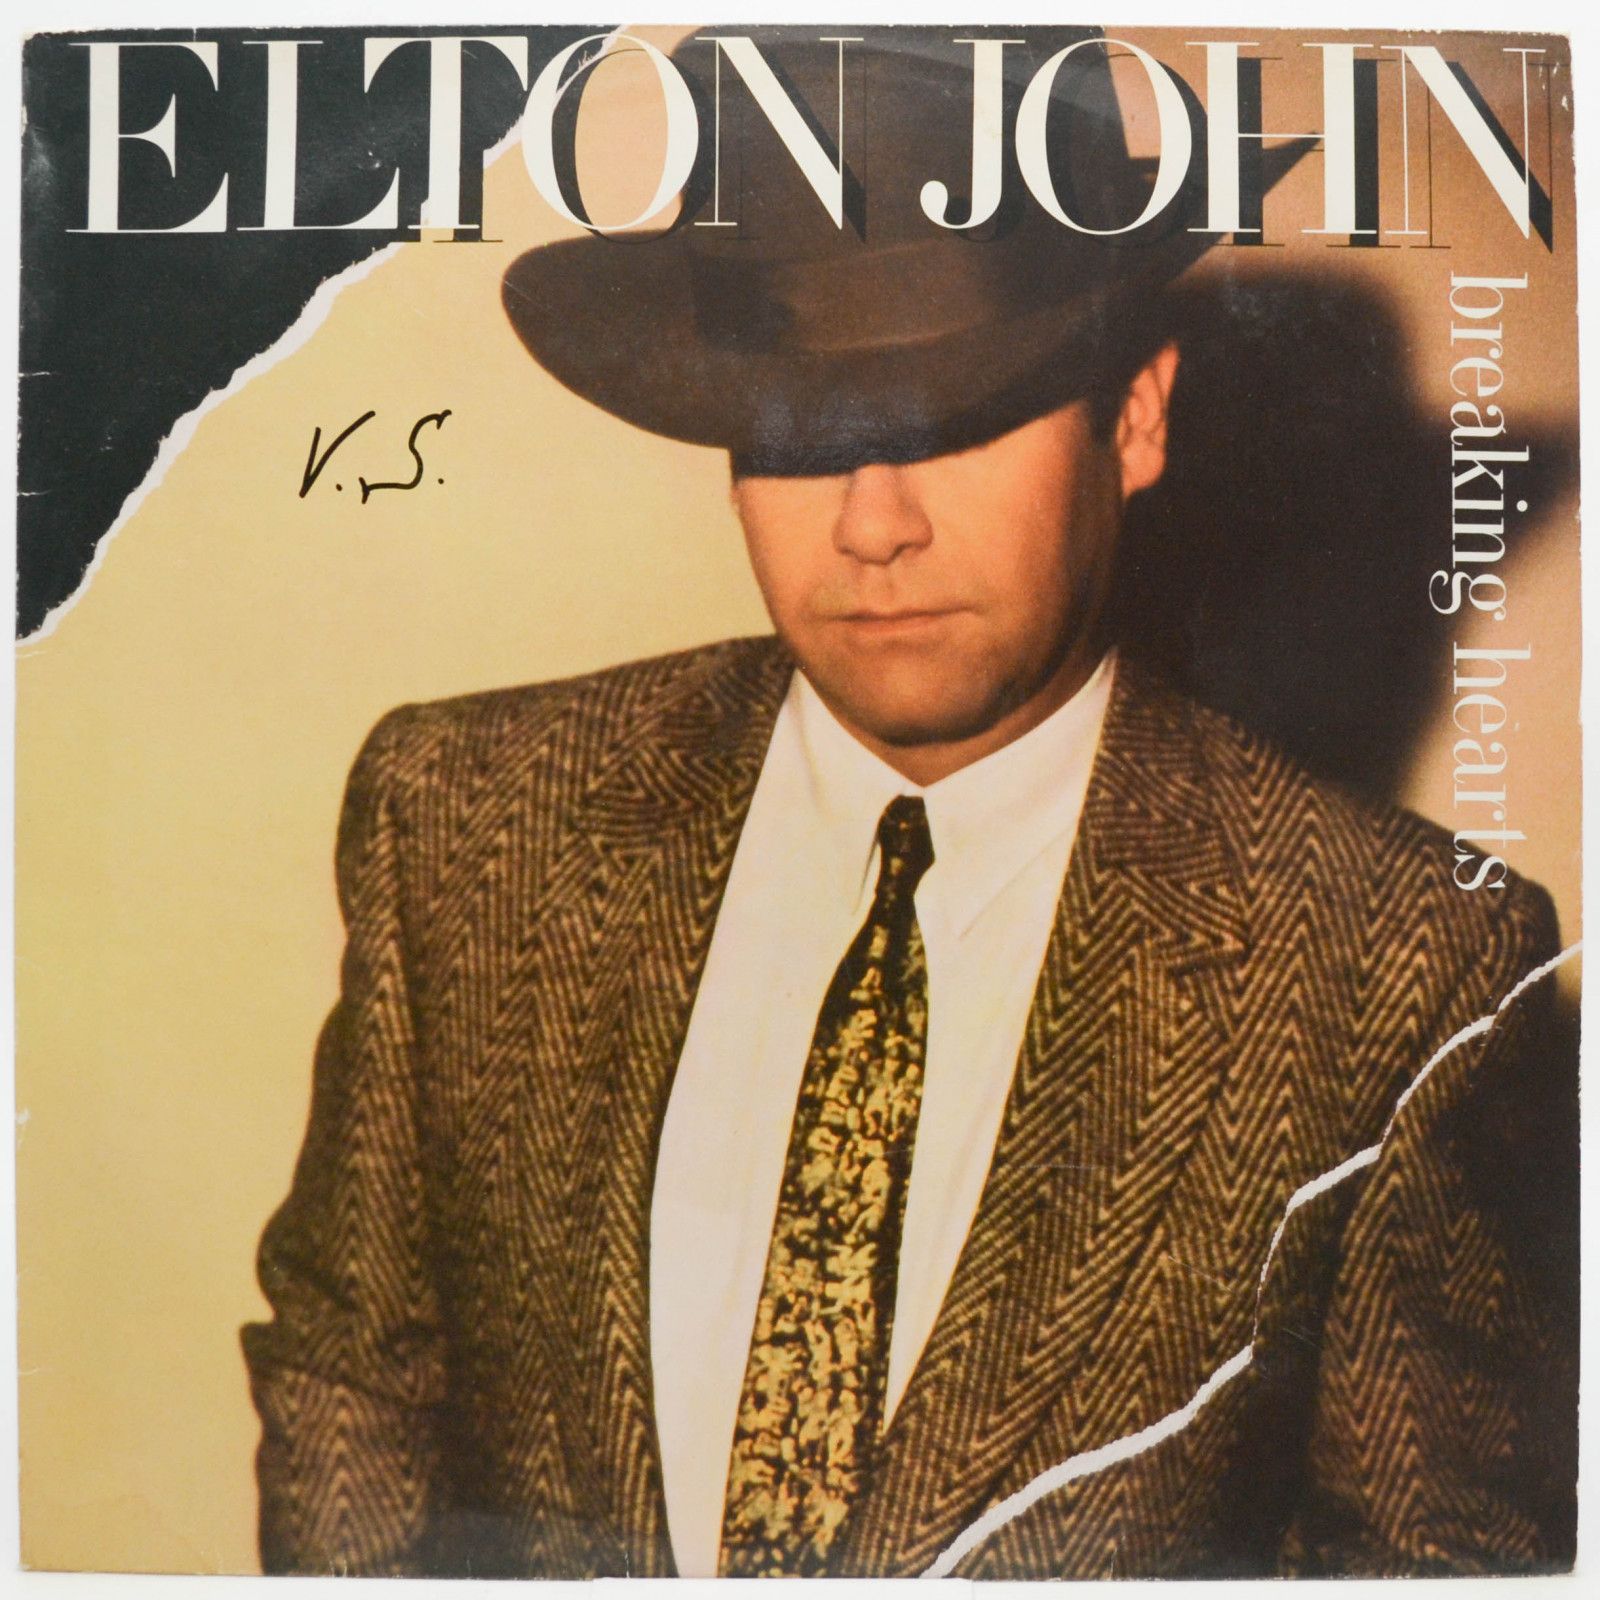 Elton John — Breaking Hearts, 1984